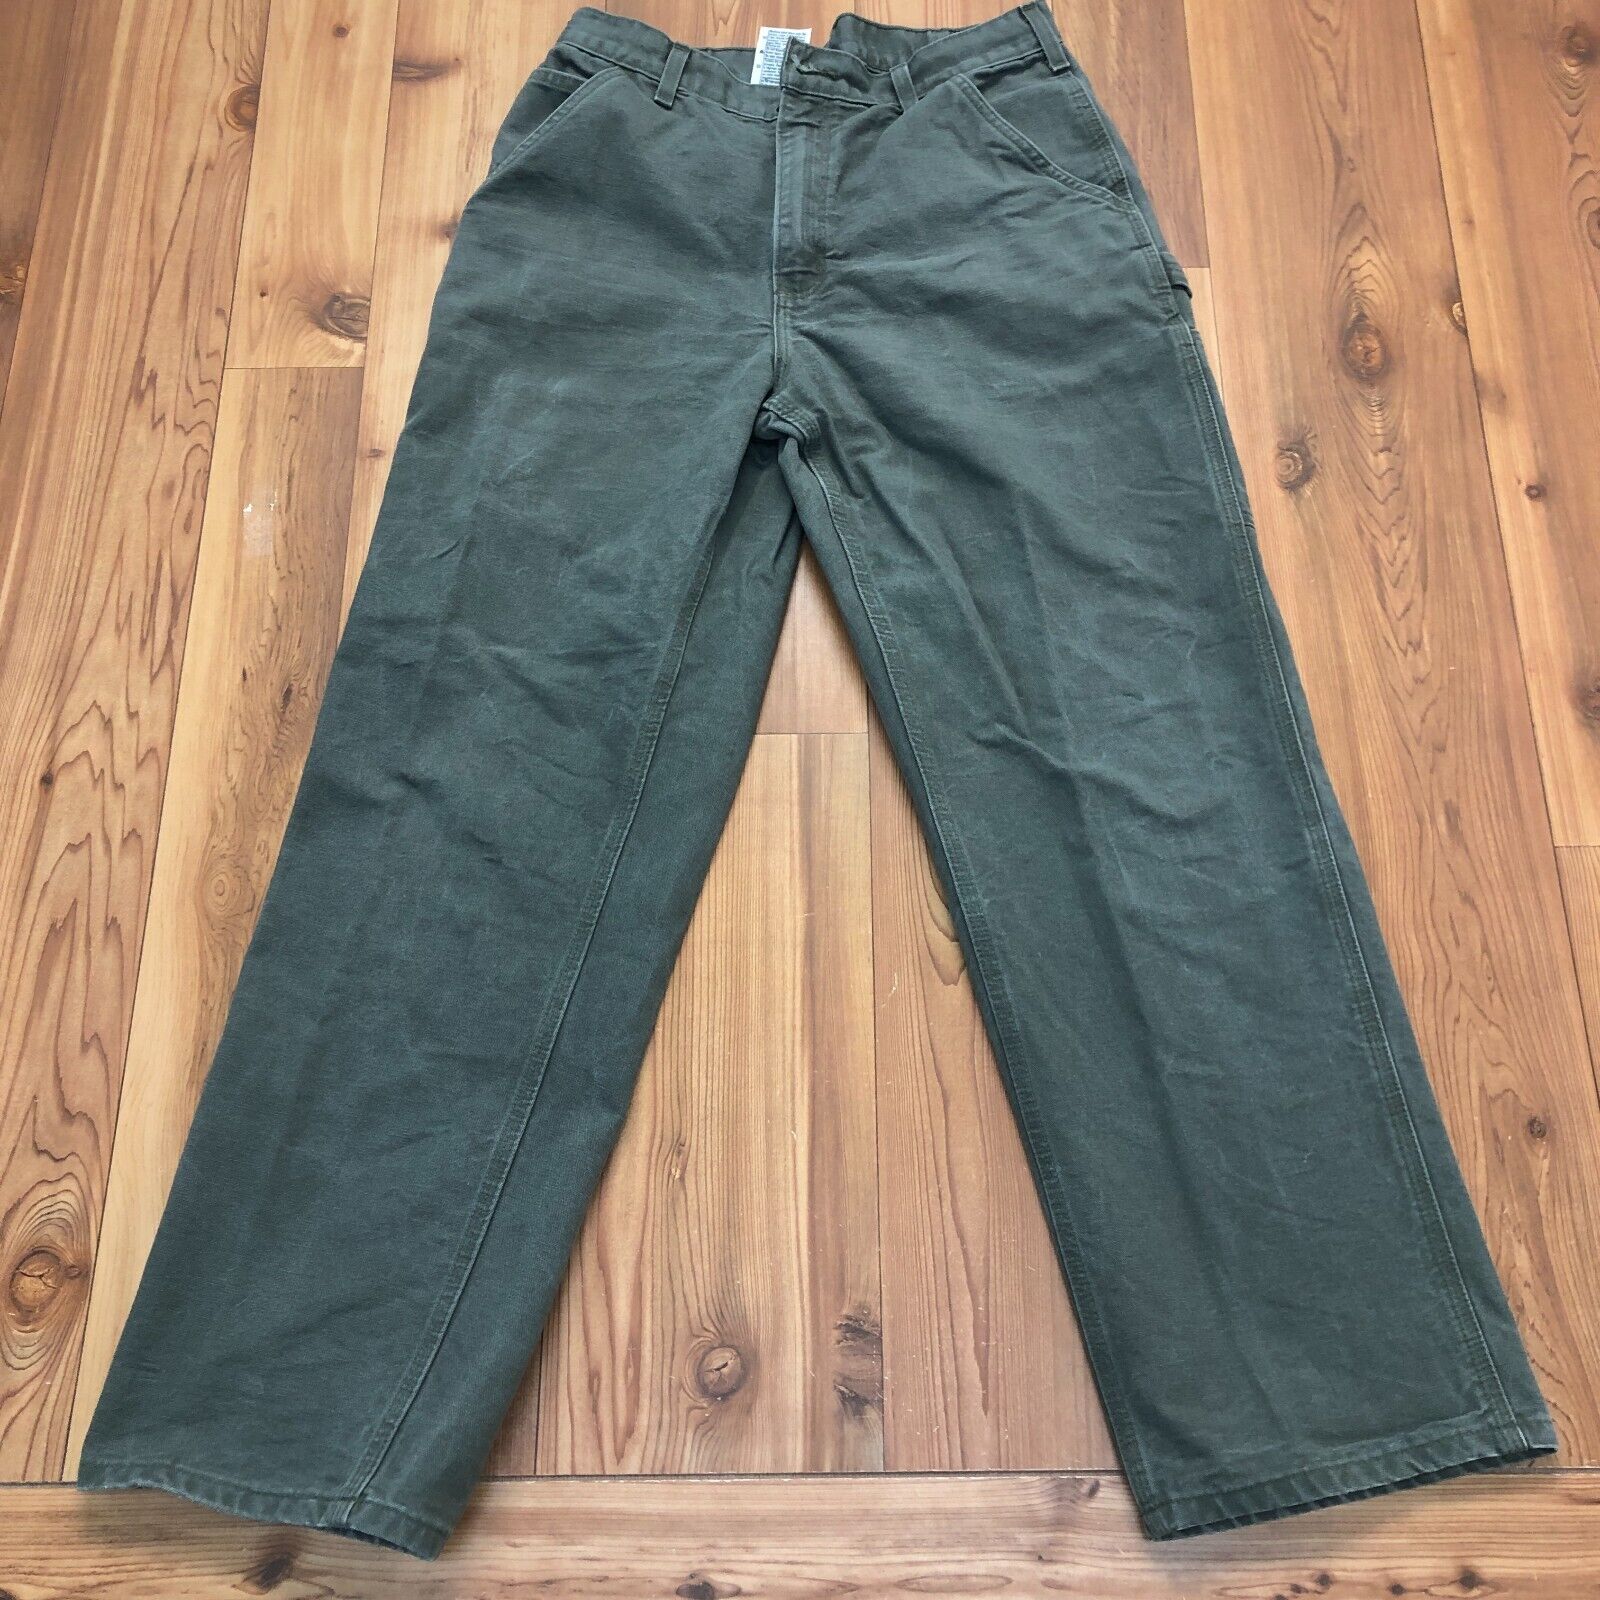 Carhartt Green Denim Cotton Regular Fit Flat Front Jeans Men's Size 33/32